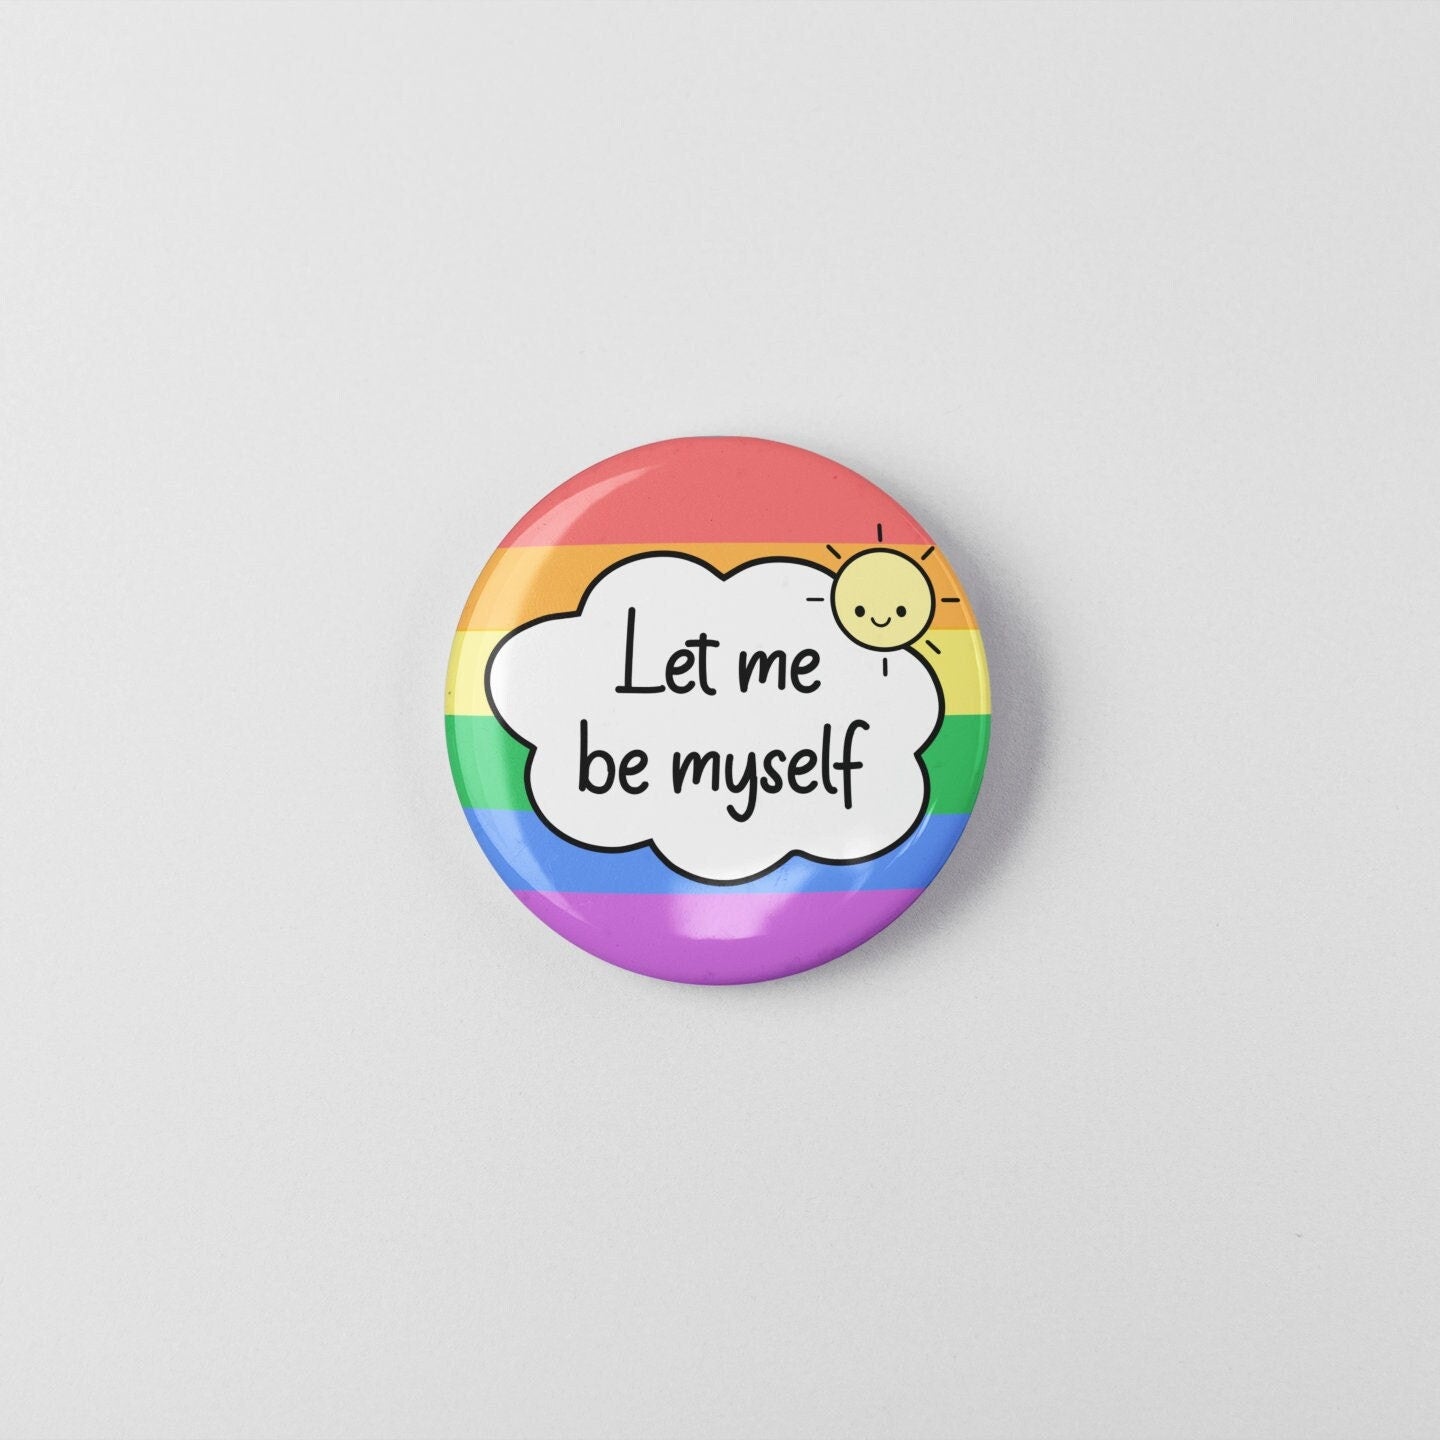 Let Me Be Myself - Pin Badge | Mental Health Badges - Self Care - Self Love